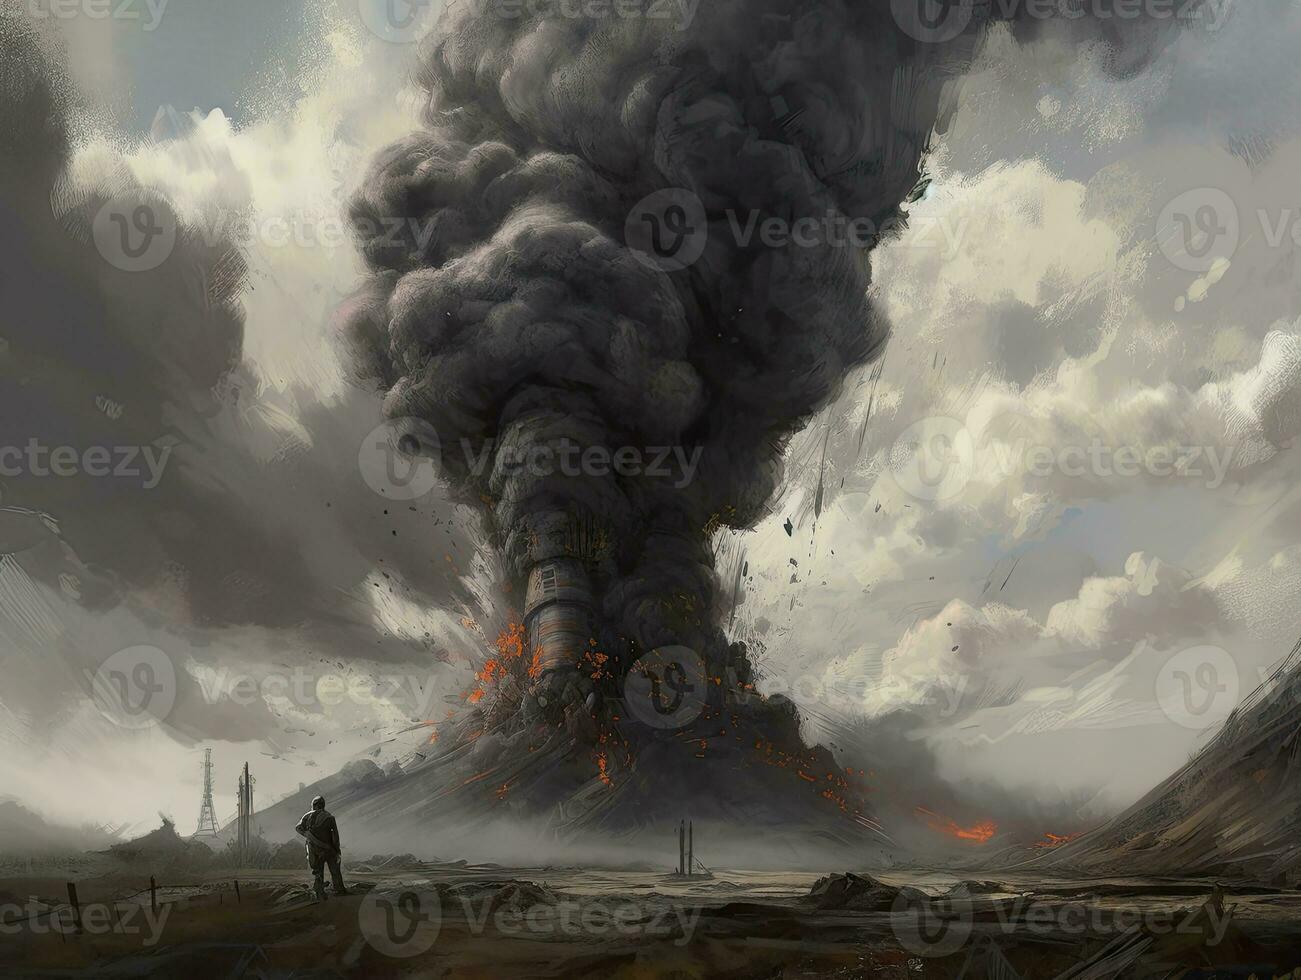 vulkaan explosie brand rook landschap stad mysticus poster buitenaards wezen steampunk behang fantastisch foto